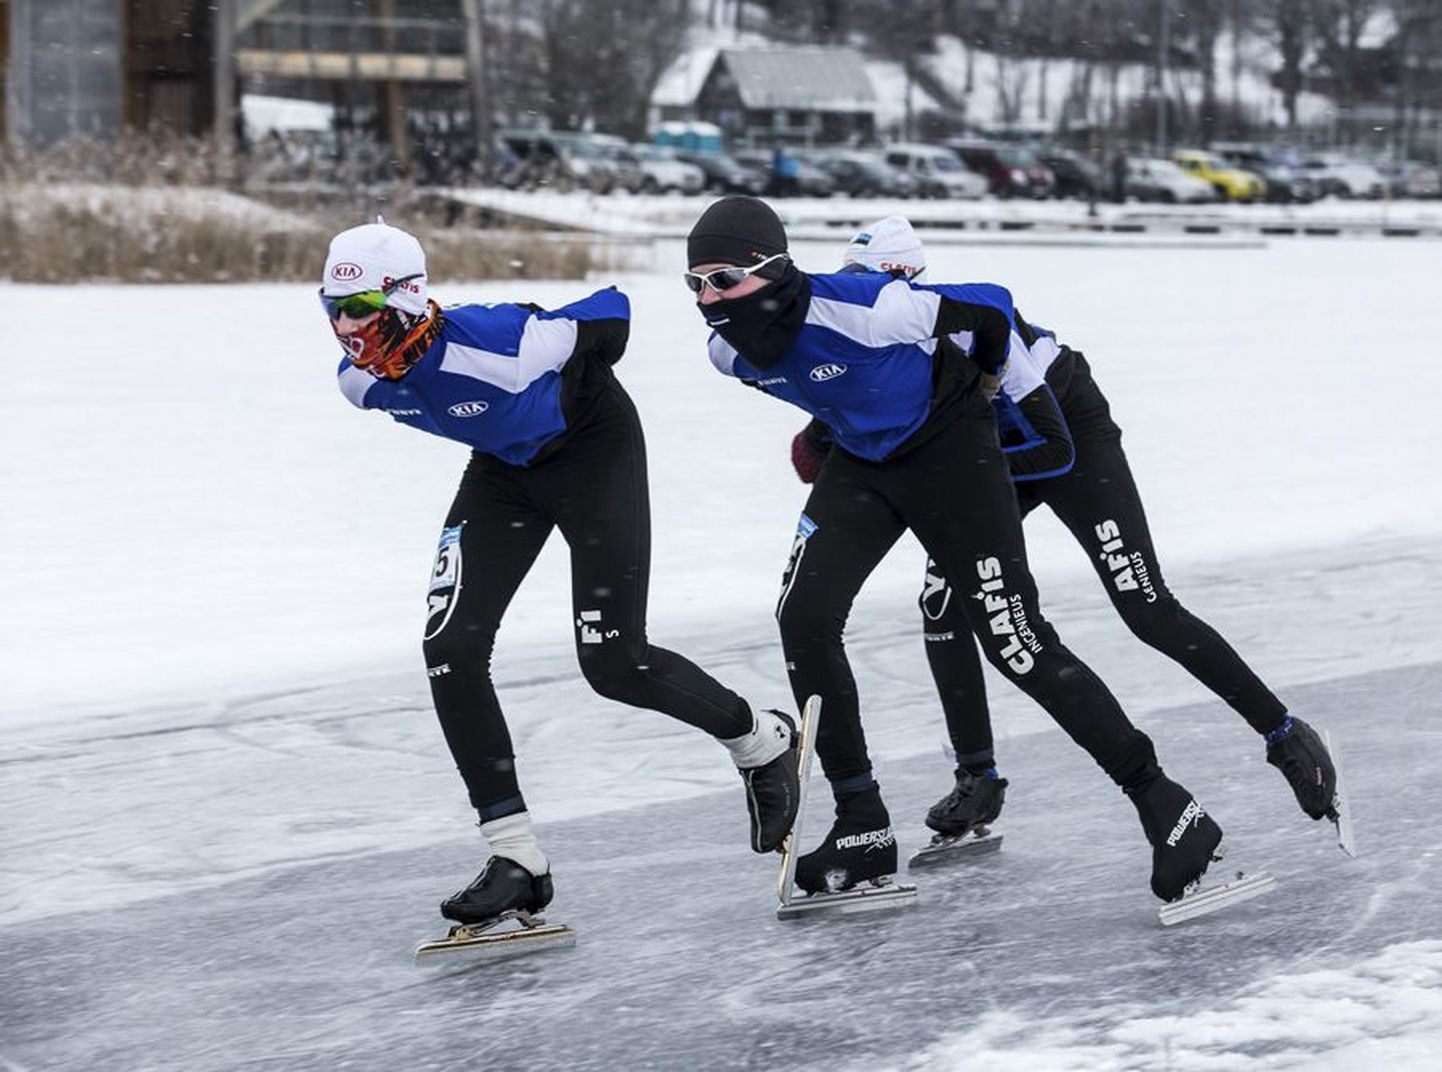 Homme tuleb Viljandi järvel pärast aastast vahepausi taas Mulgi uisumaraton. Korraldajad ootavad jääle üle 300 uisutaja.